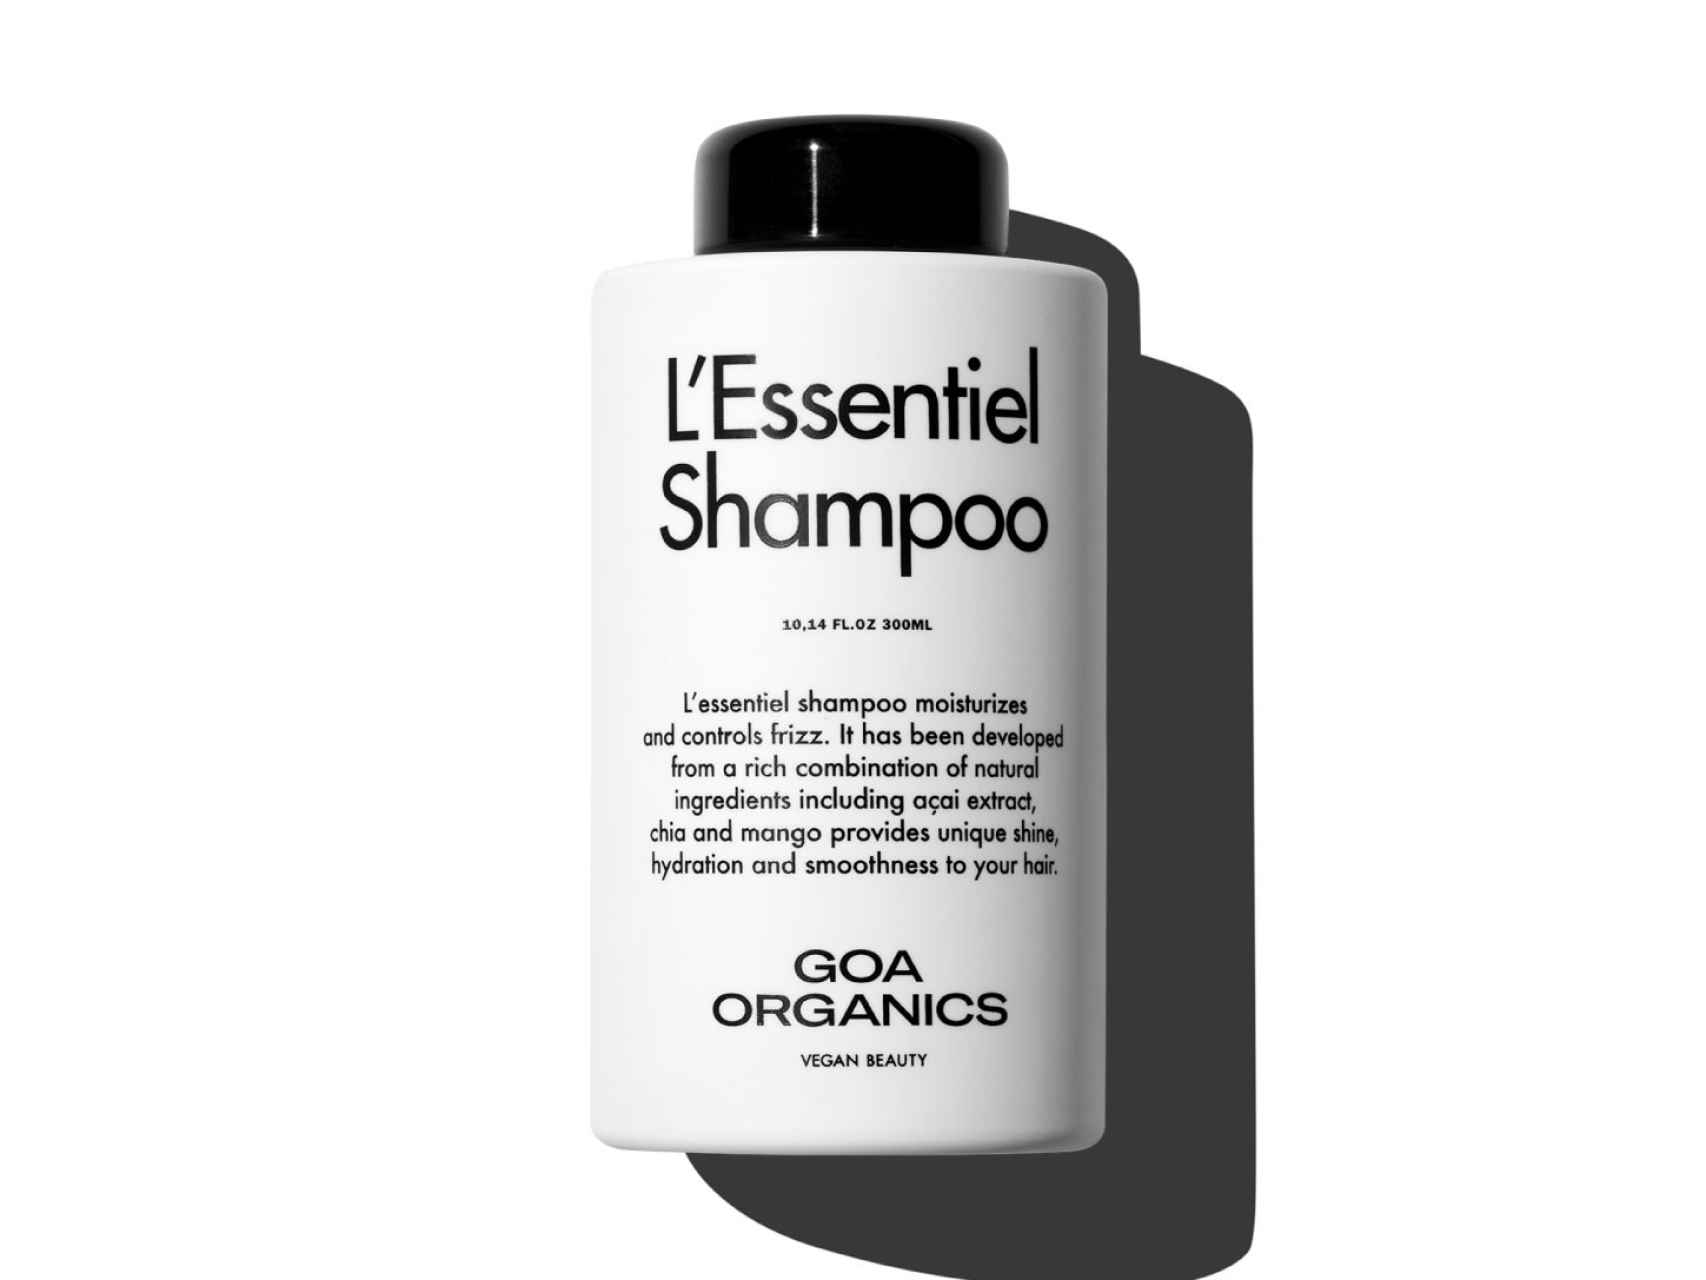 L'Essentiel Shampoo